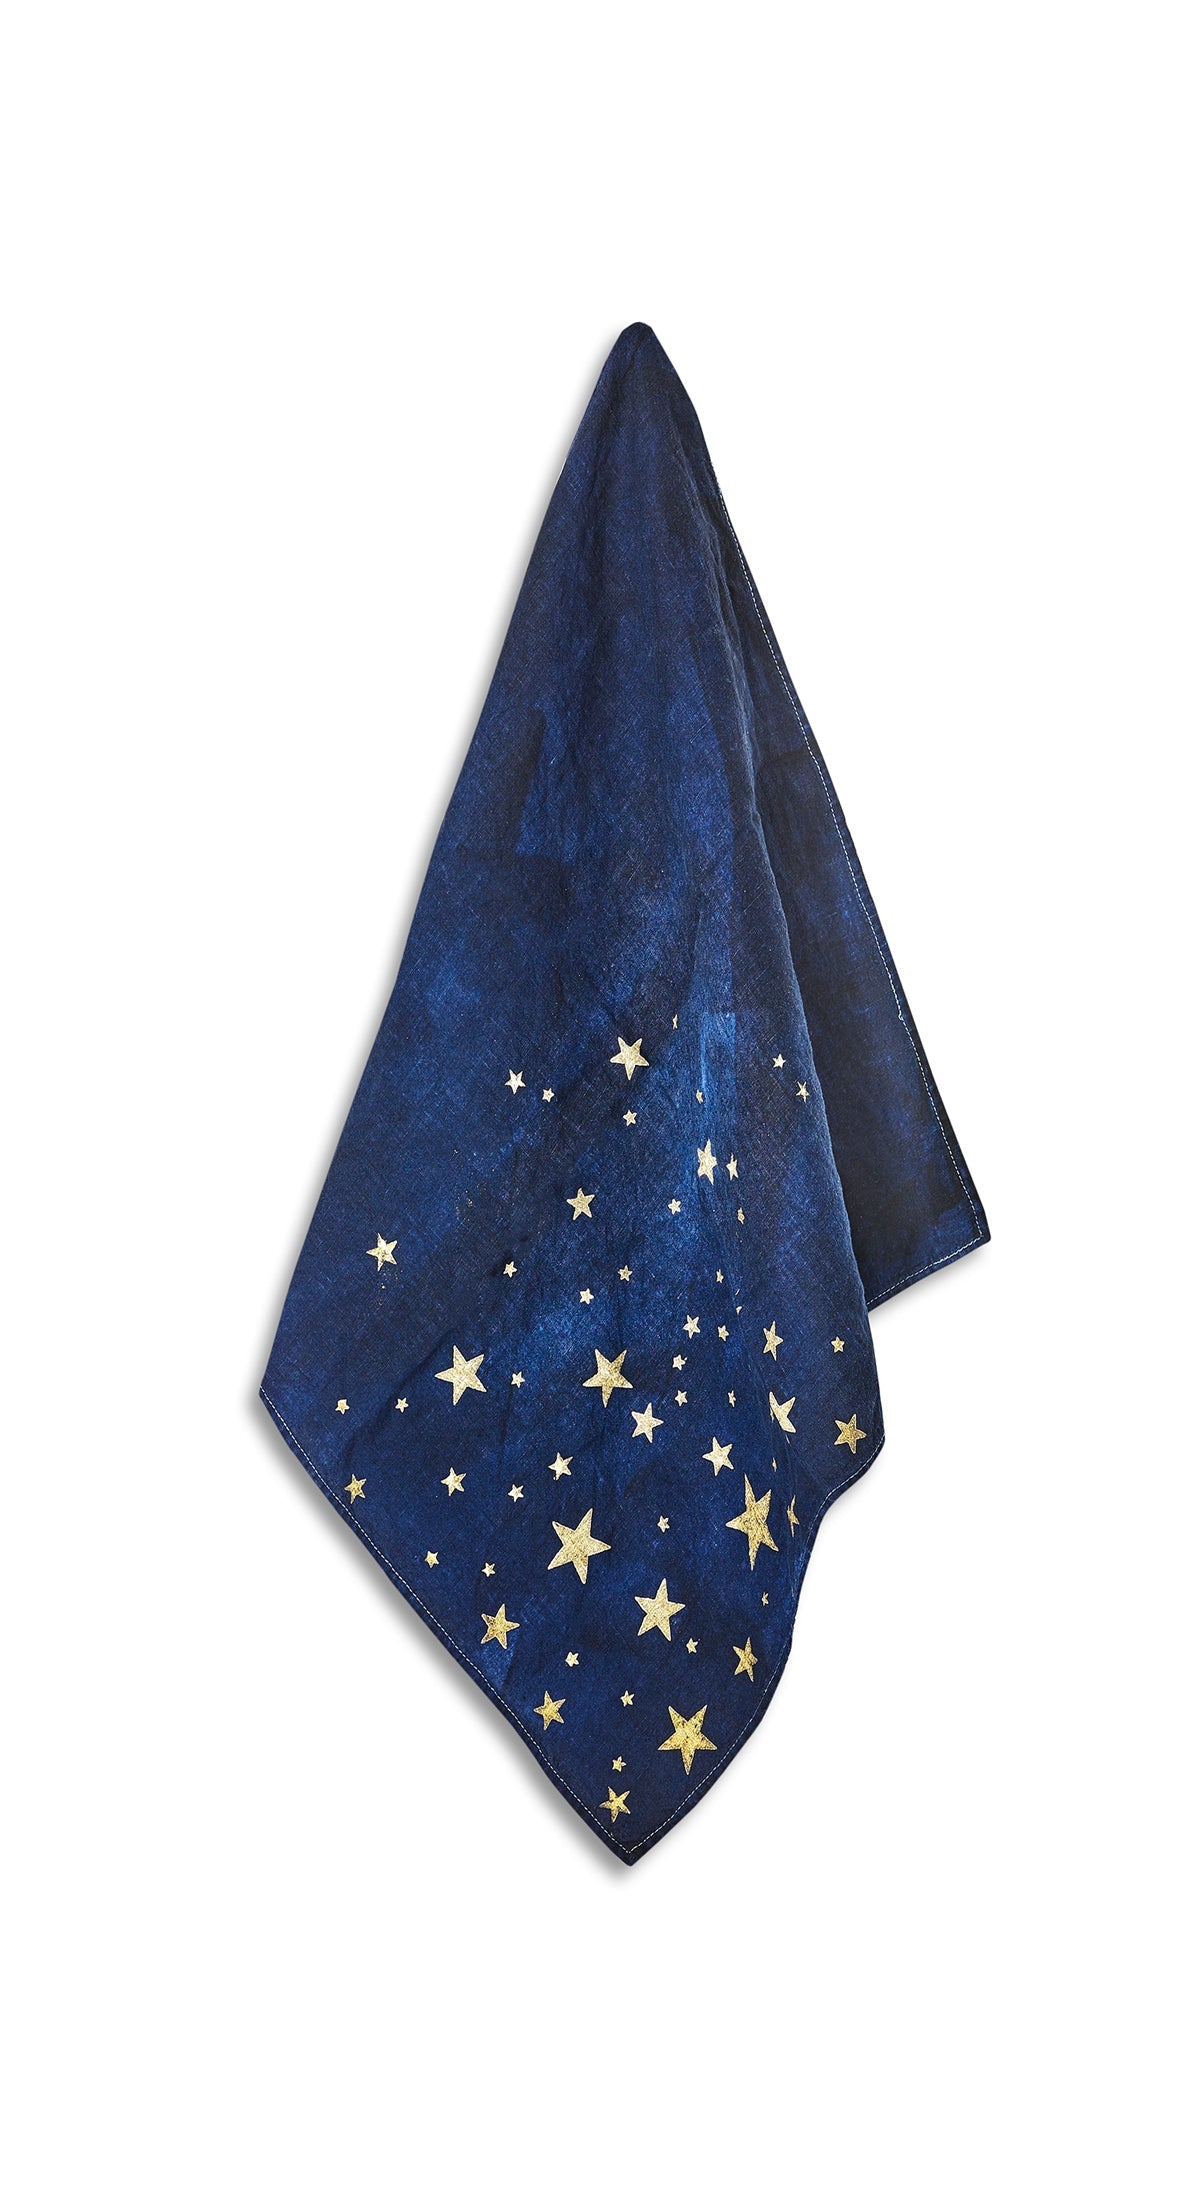 Falling Stars Linen Napkin in Ink Blue, 50x50cm